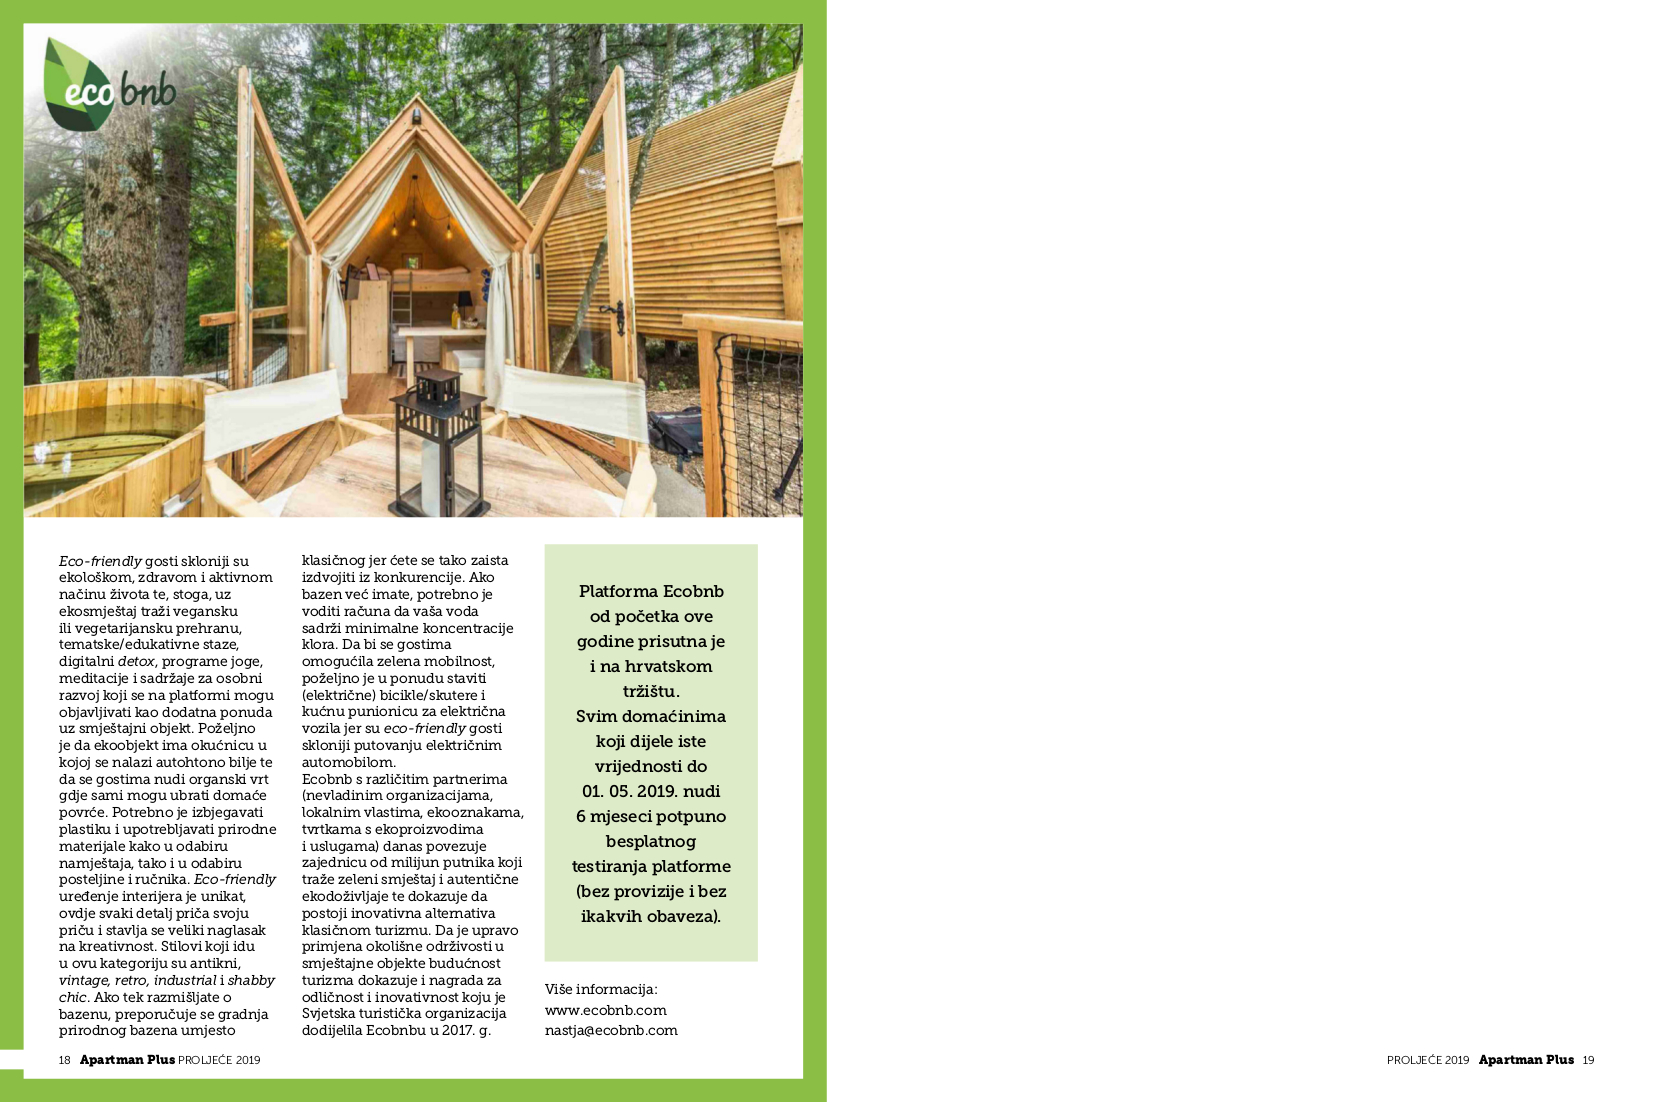 Articolo dedicato ad Ecobnb, pubblicato sulla rivista croata Apartman Plus